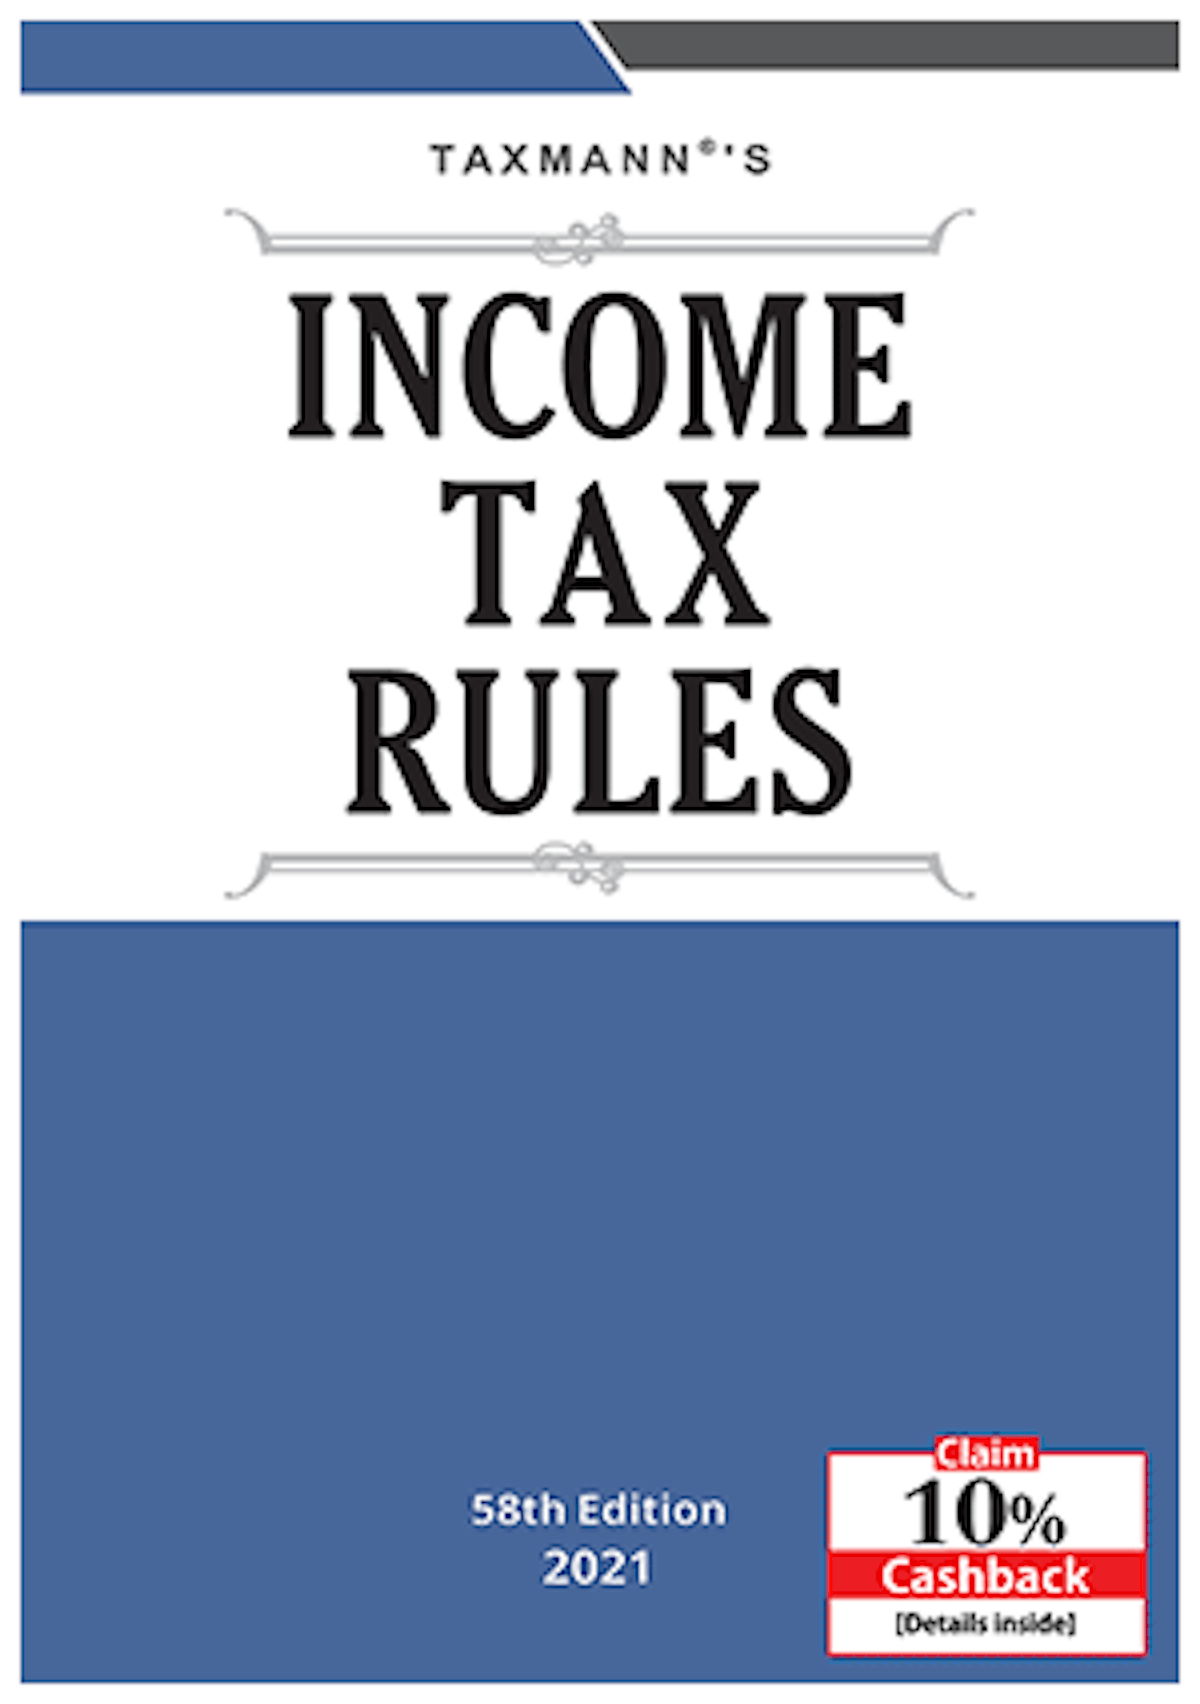 Tax Rules Virtual Book/eBook by Taxmann